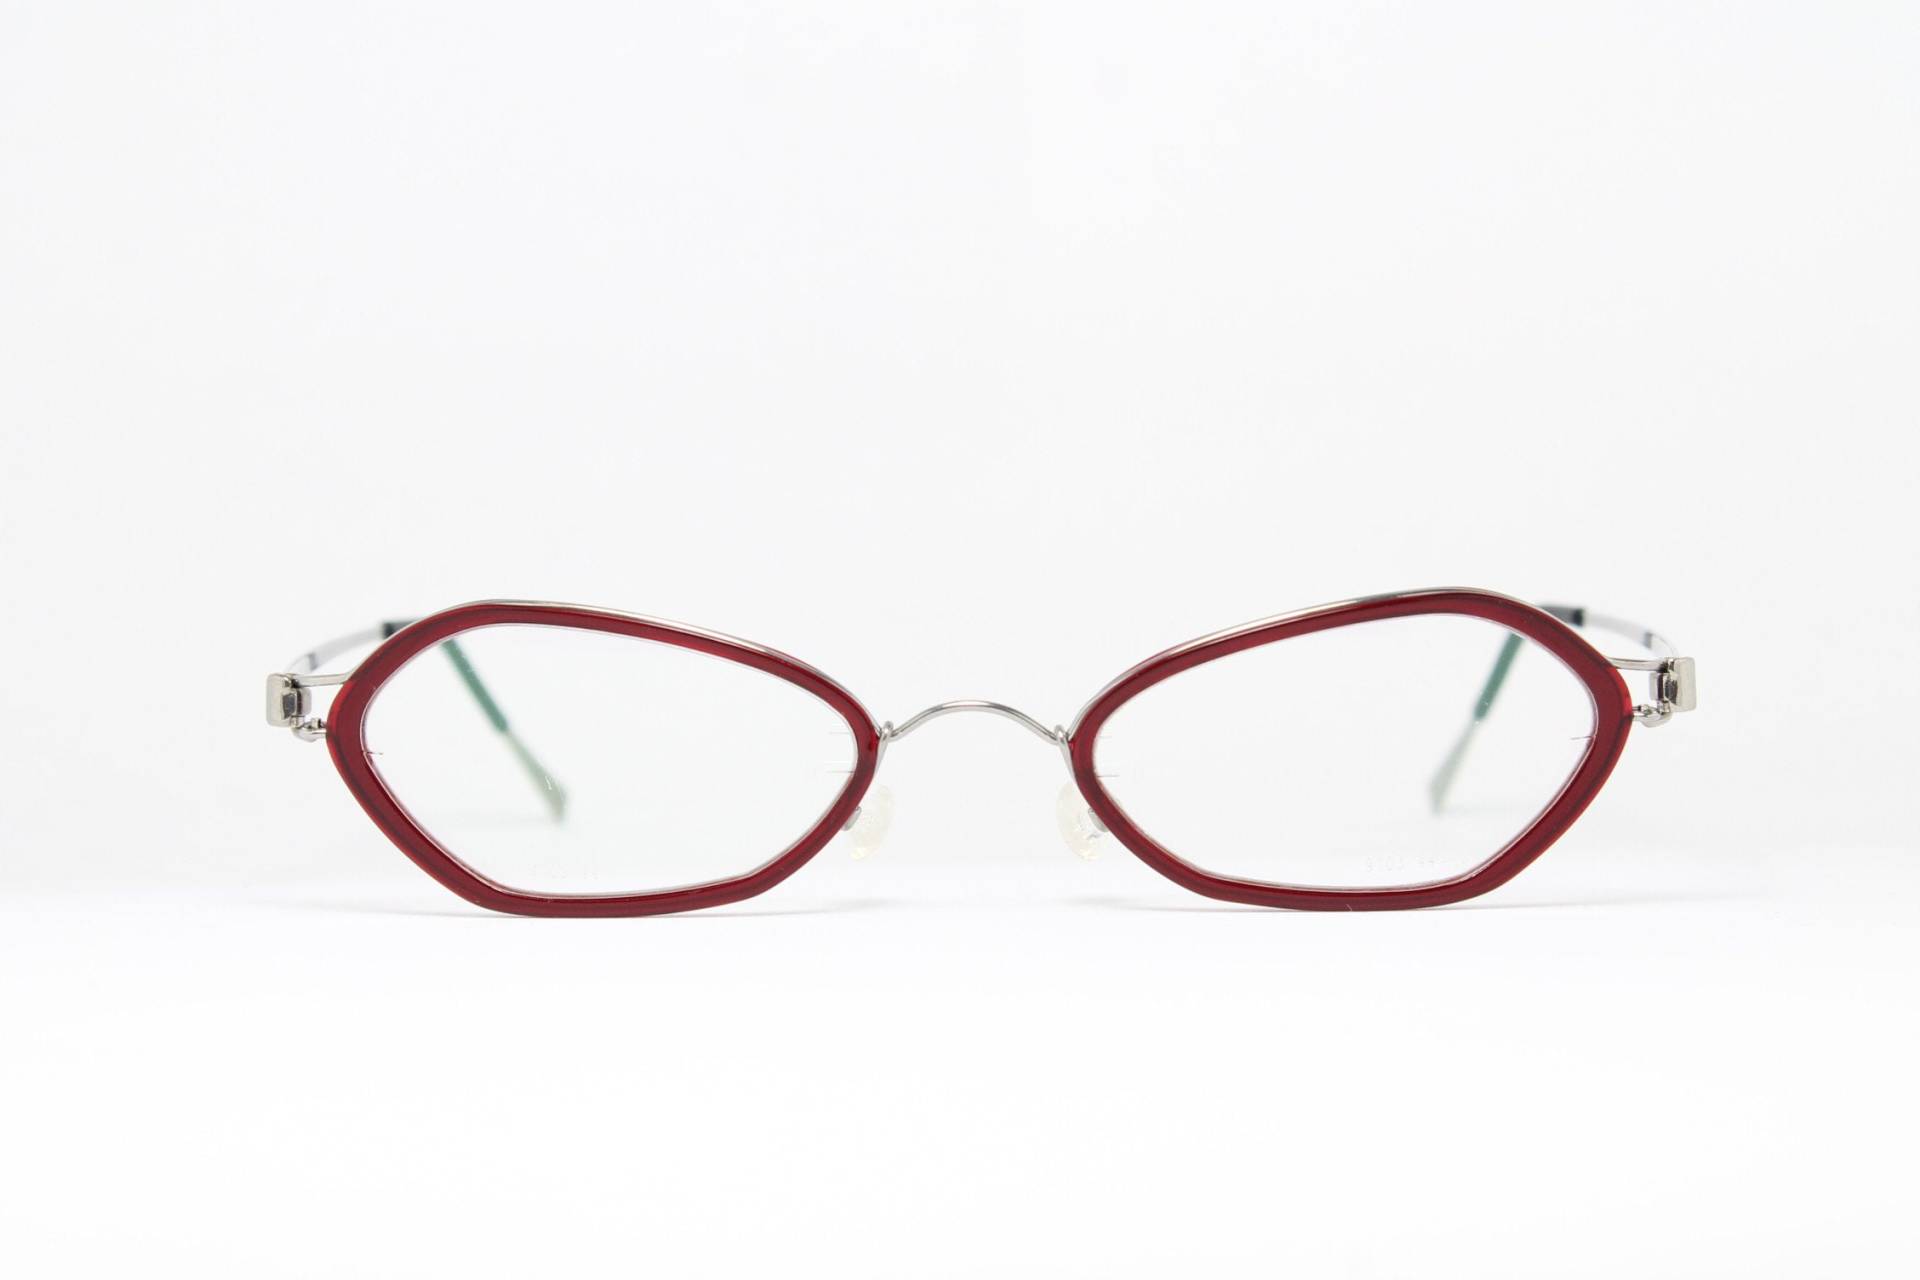 Einzigartige Kleine Lindberg Acetanium Stripwire 9103 Seltene True Vintage Brillen Gläser Lunettes Occhiali Bril Glasögon Gafas E06 von VintageGermanGlasses